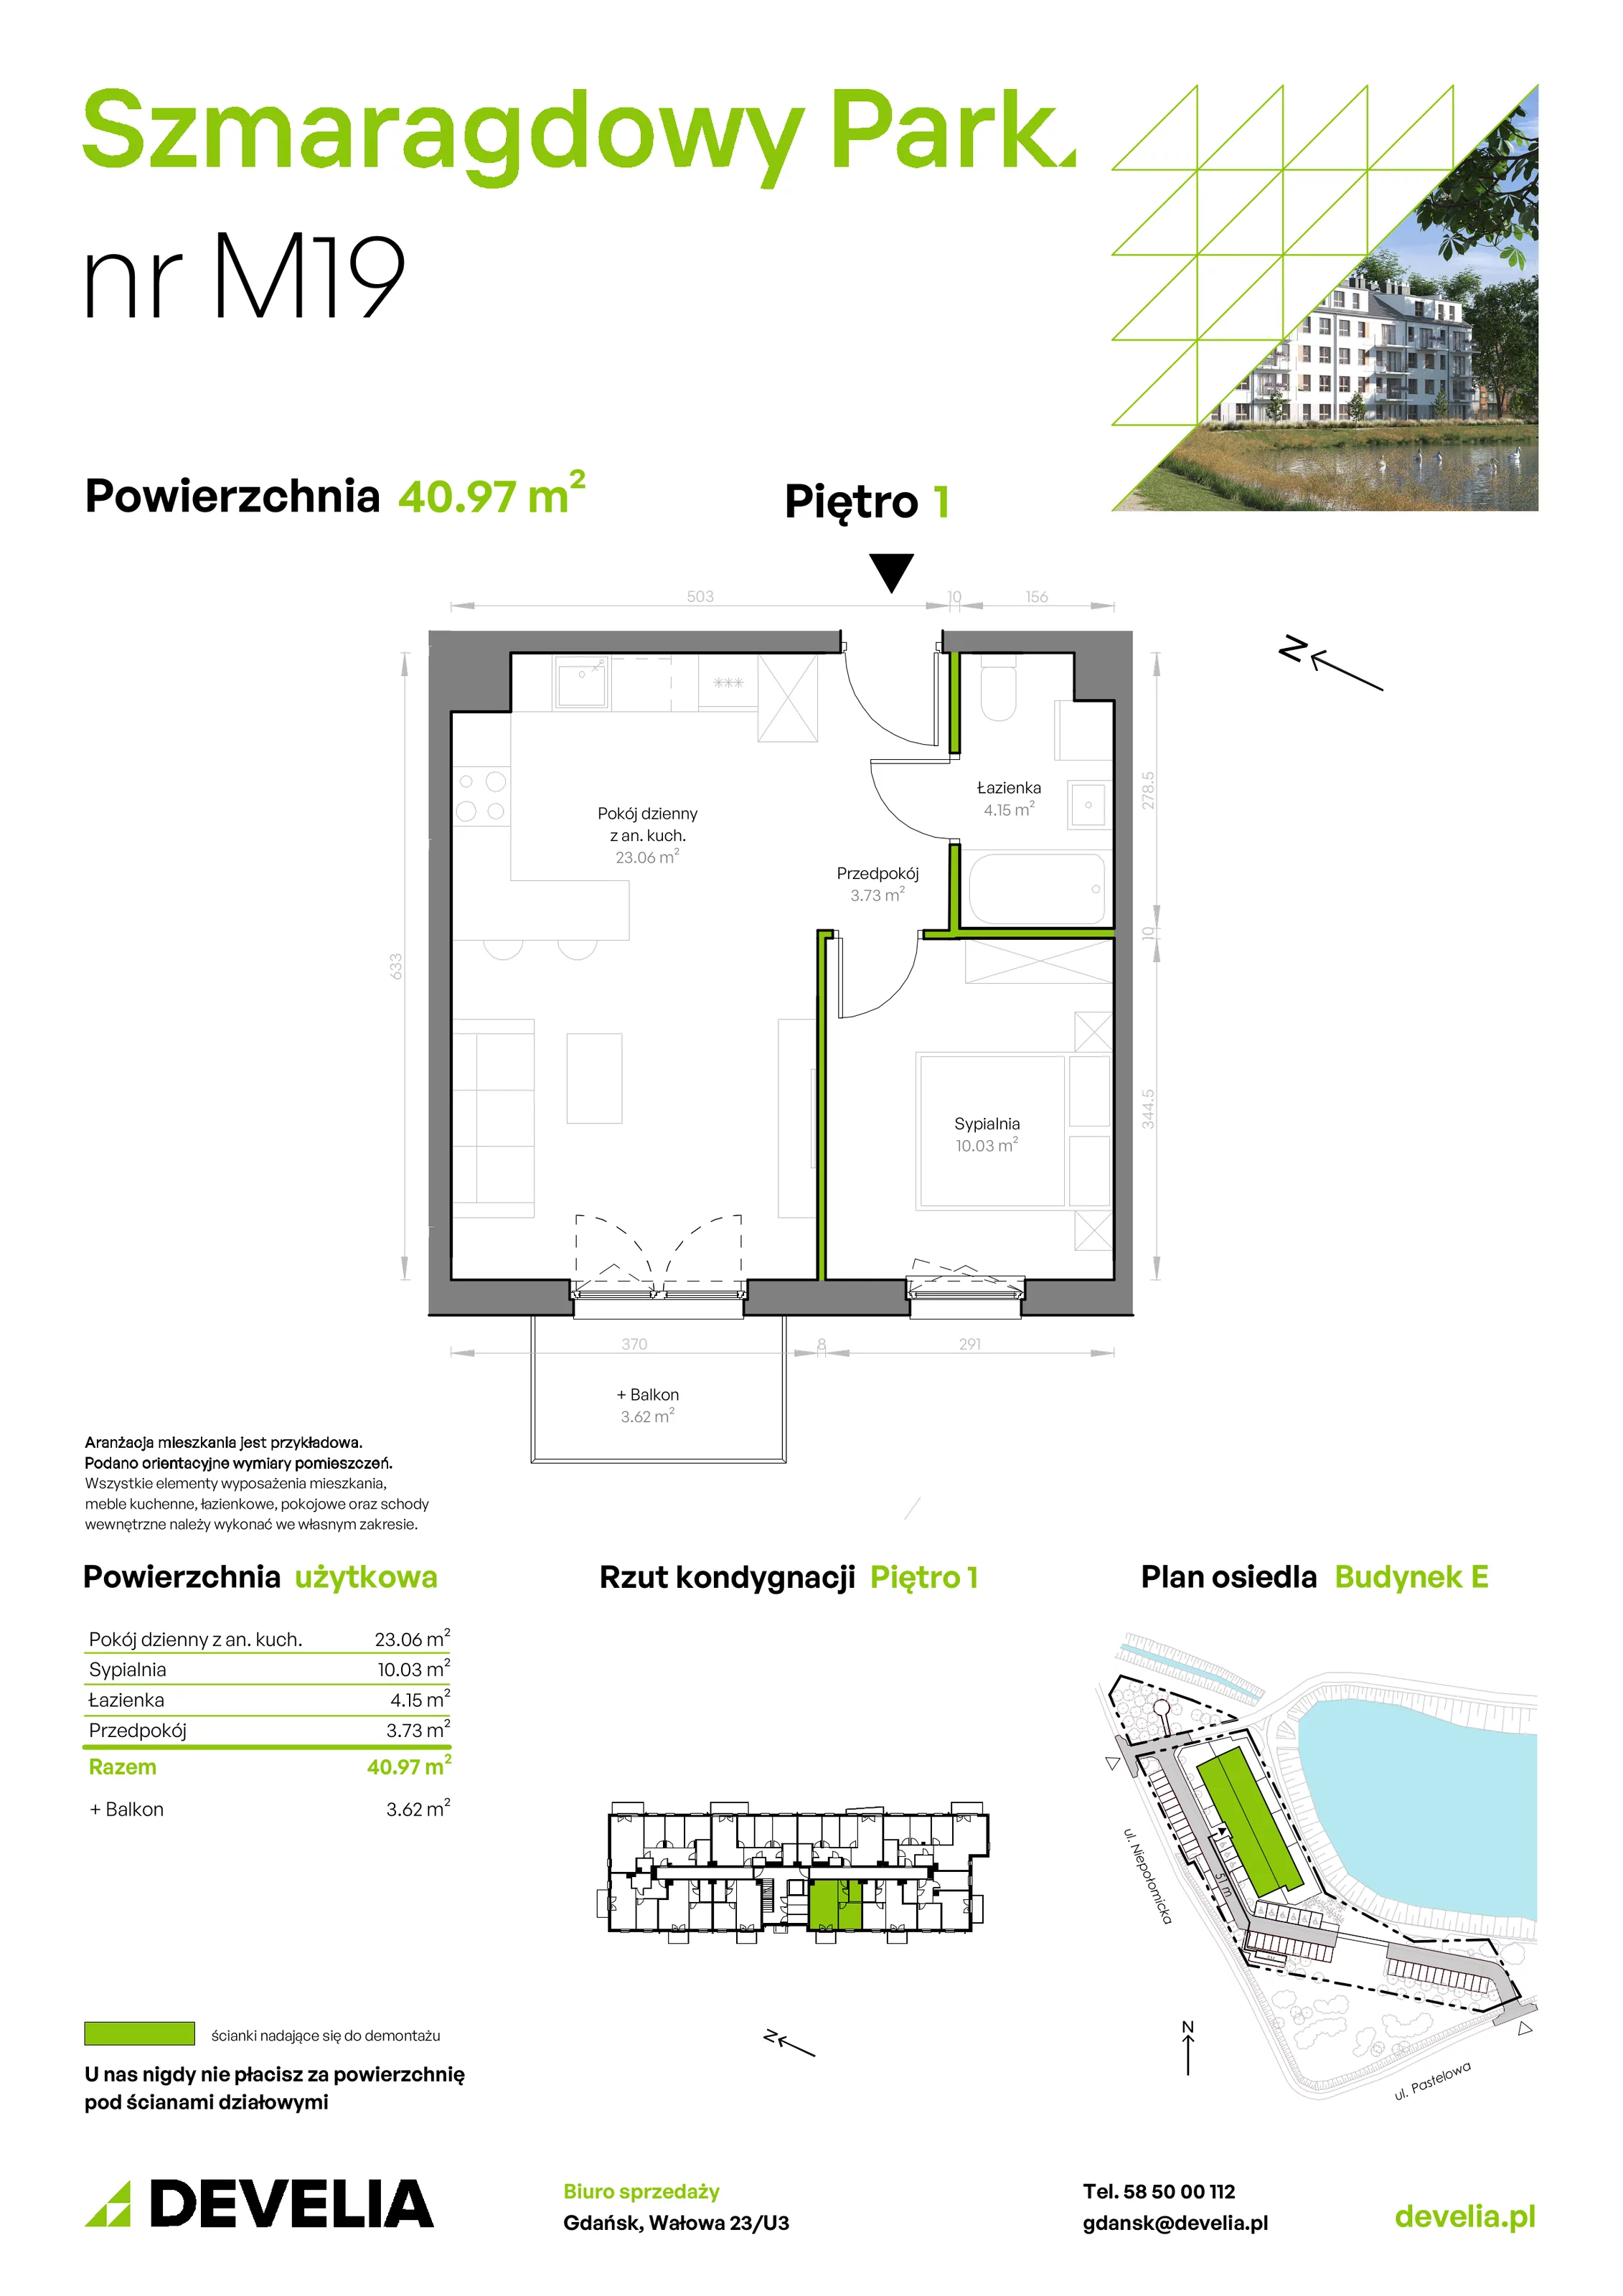 Mieszkanie 40,97 m², piętro 1, oferta nr E/019, Szmaragdowy Park, Gdańsk, Orunia Górna-Gdańsk Południe, Łostowice, ul. Topazowa 2